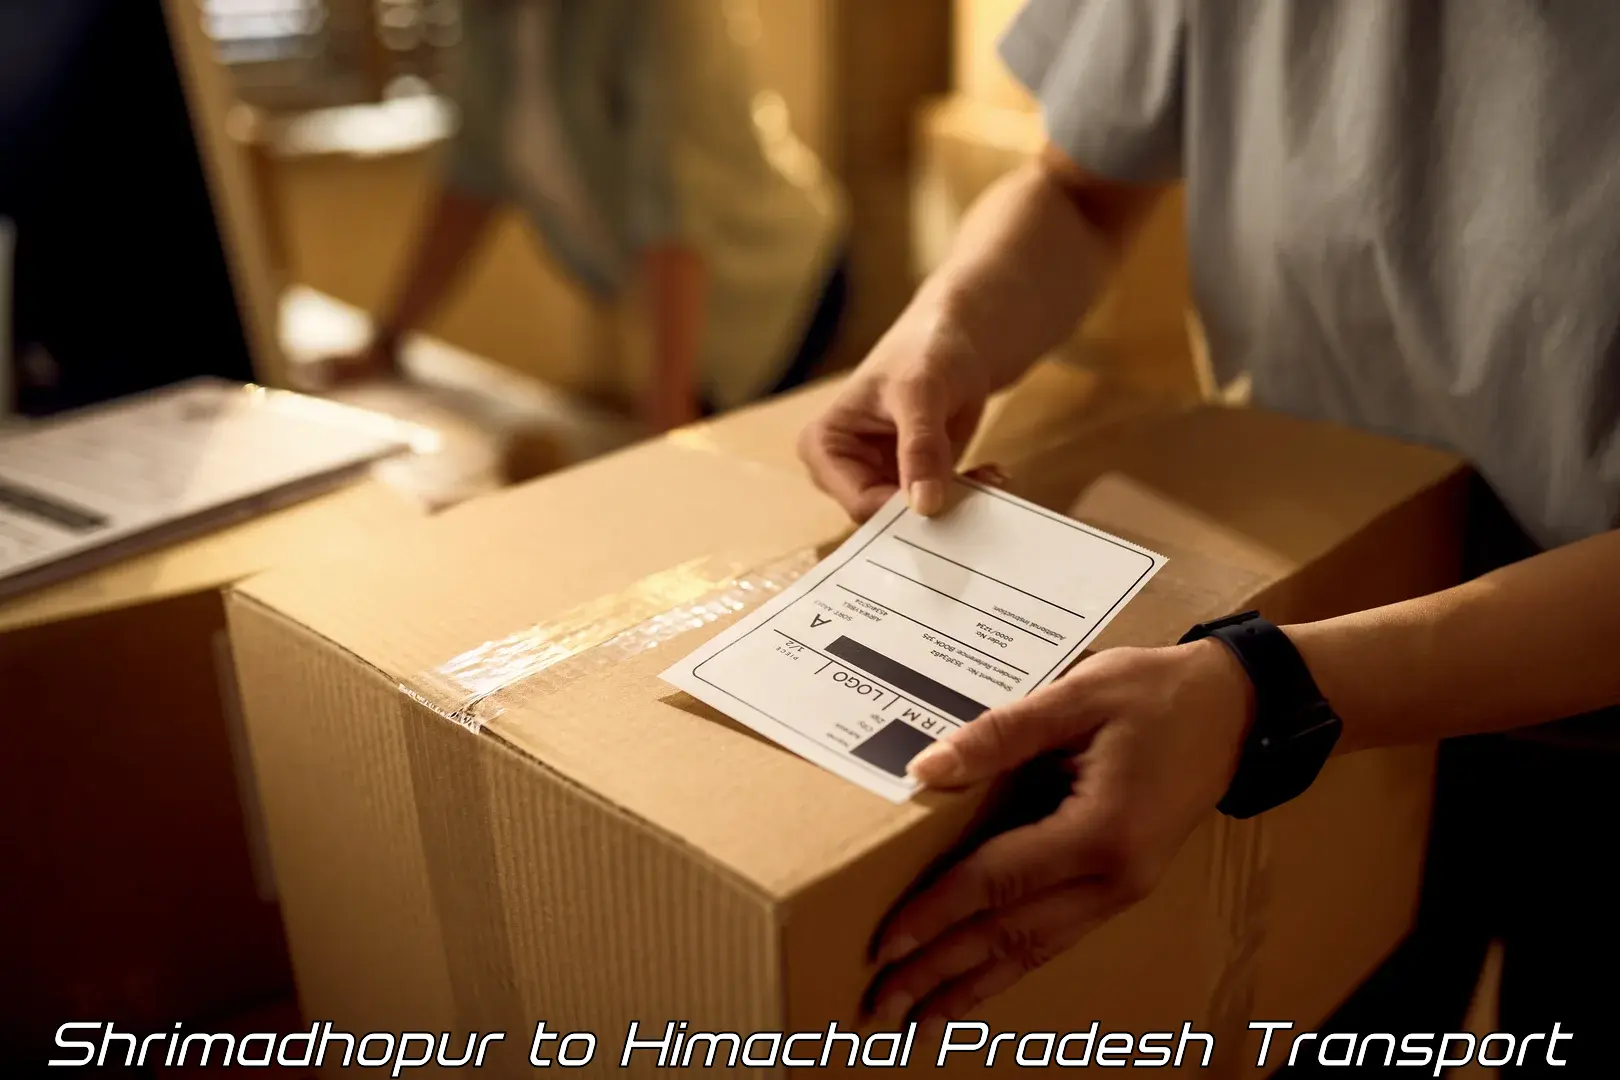 Cargo transport services Shrimadhopur to Joginder Nagar